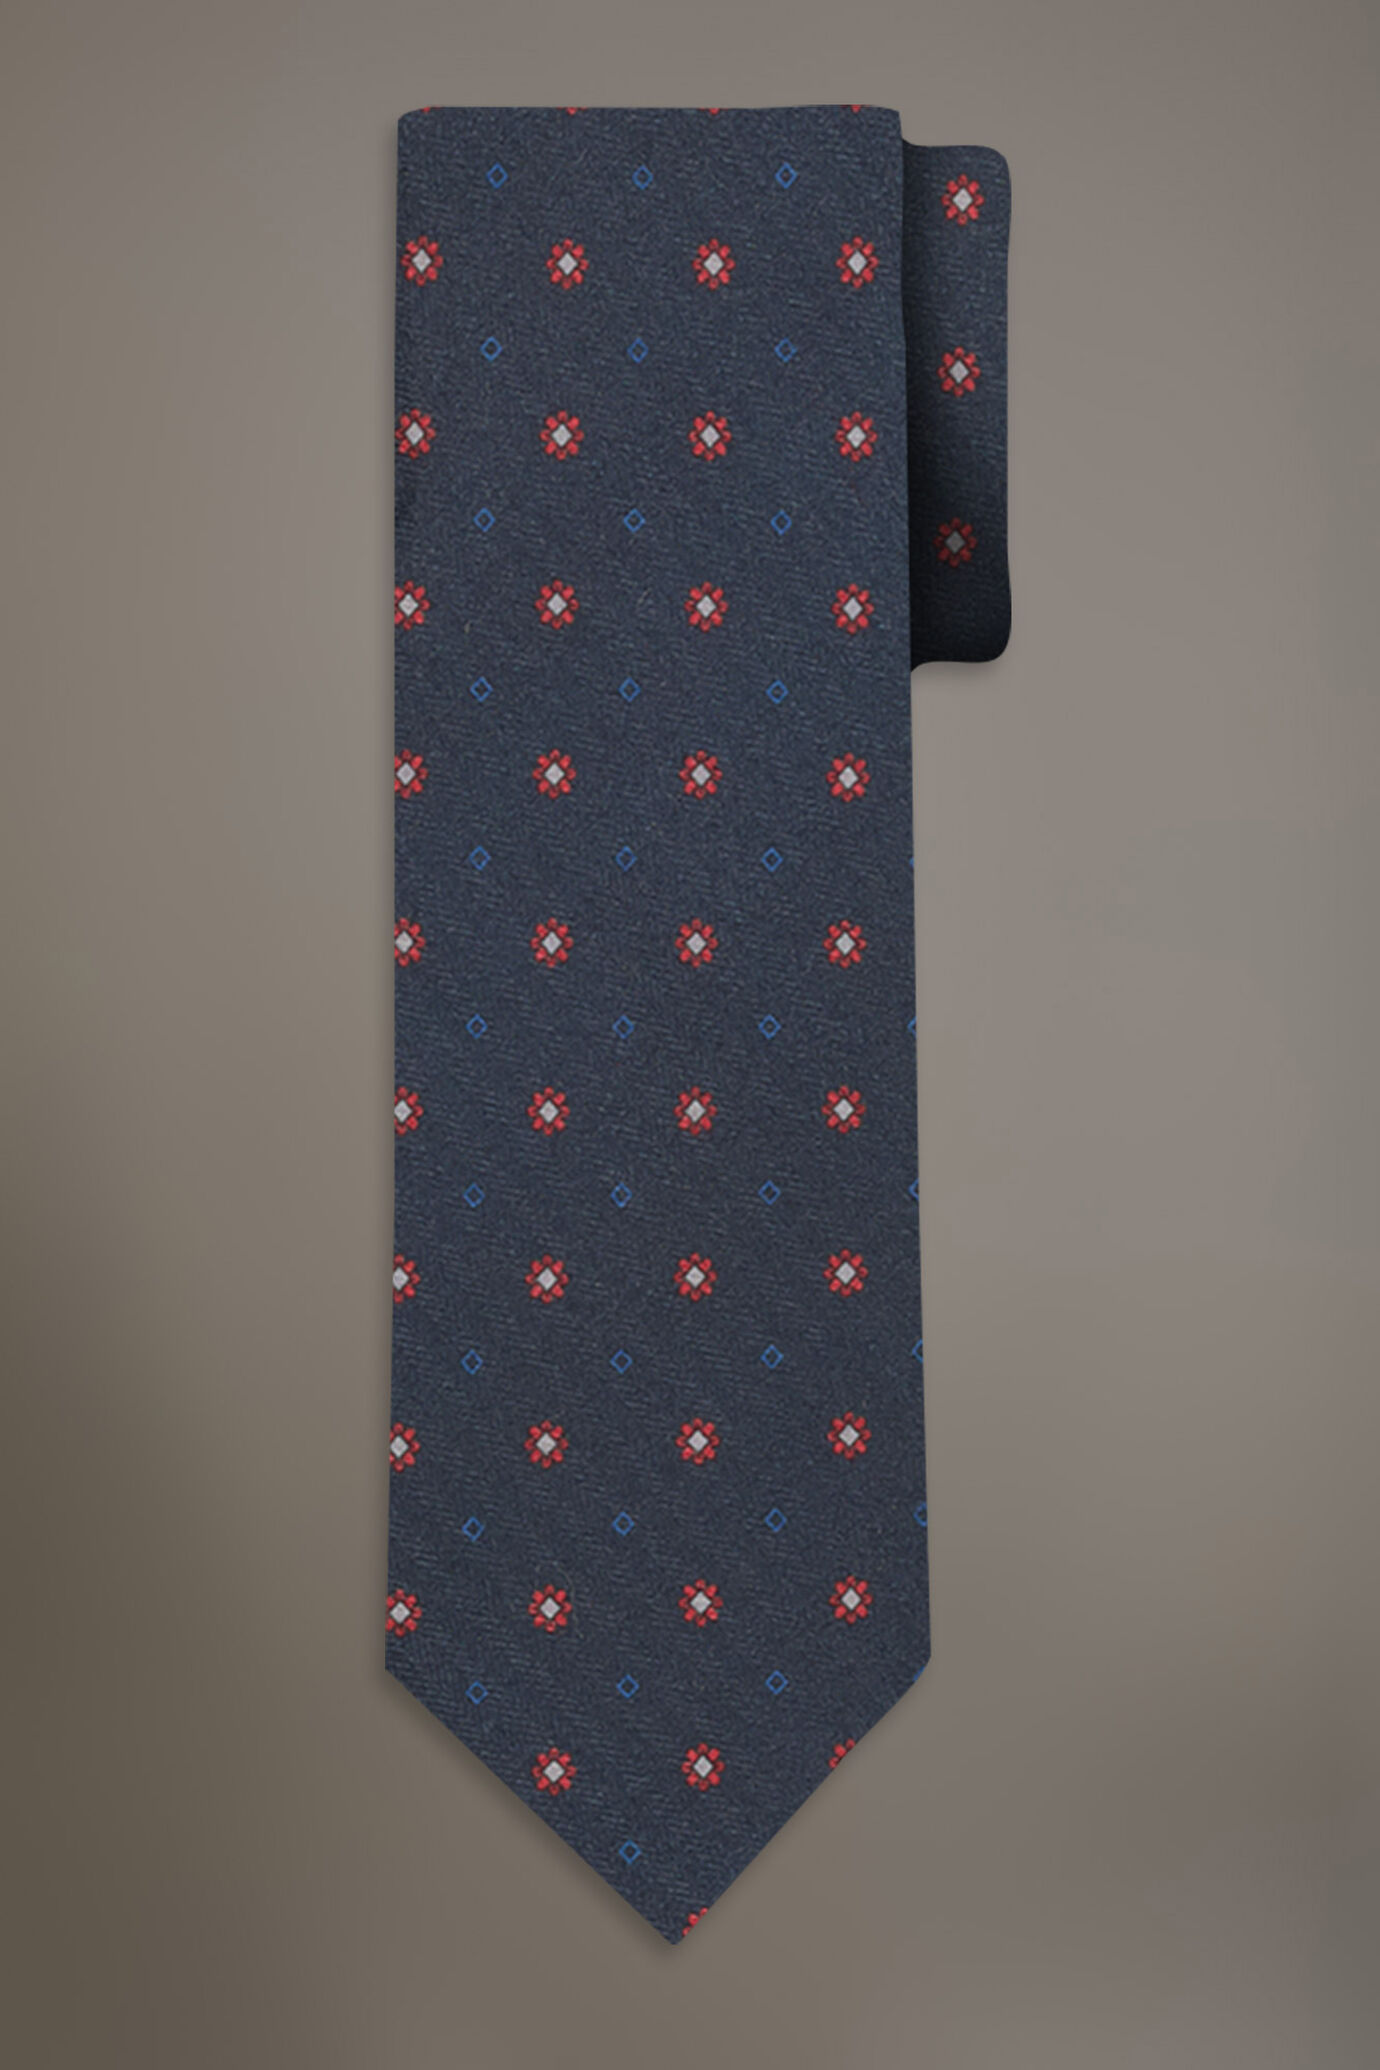 Cravatta mano lana fantasia stampata